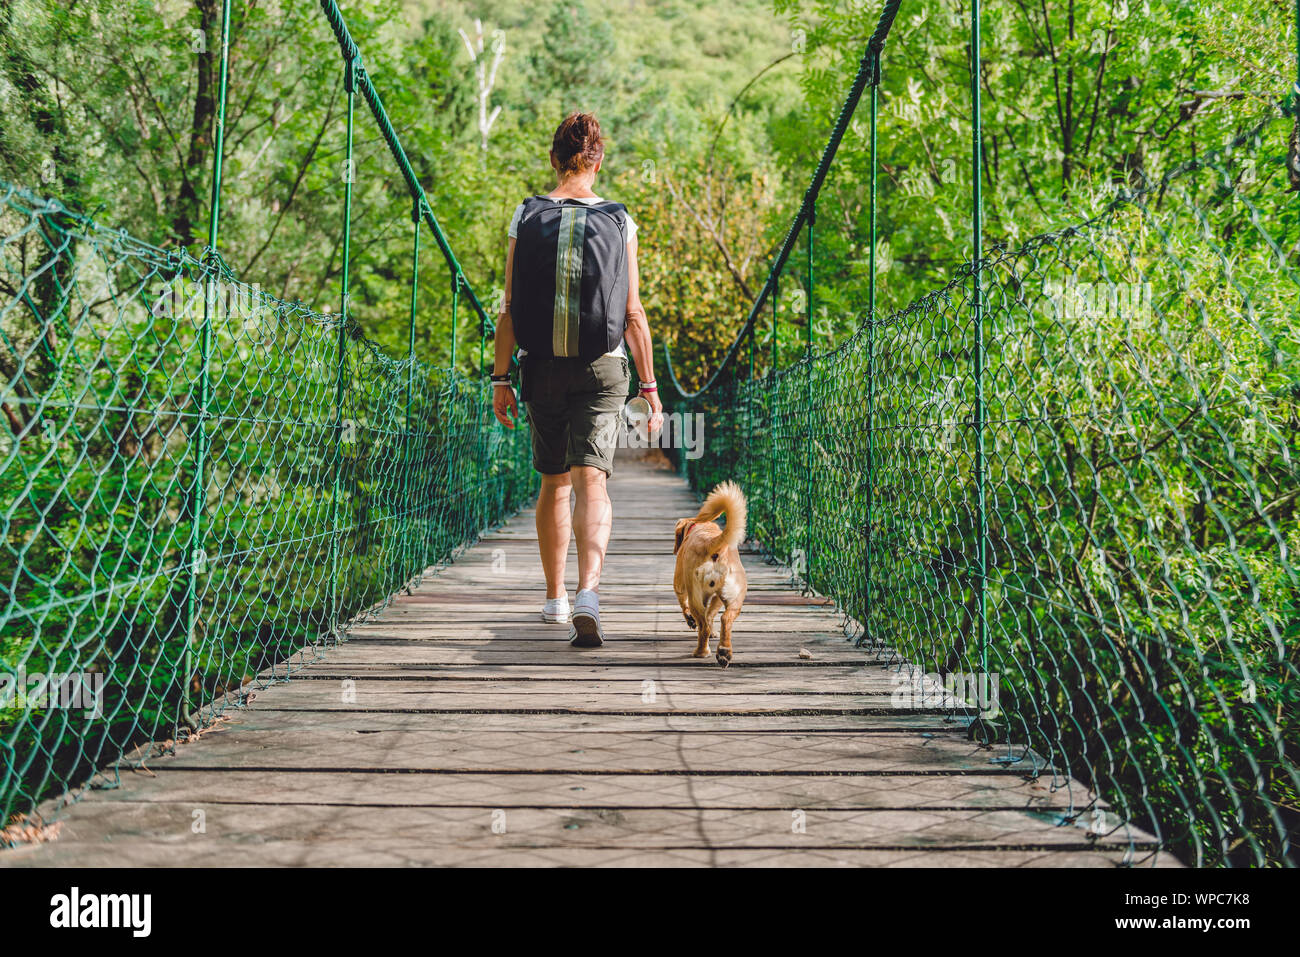 Les femmes et les petits yellow dog walking sur pont suspendu en bois dans la forêt Banque D'Images